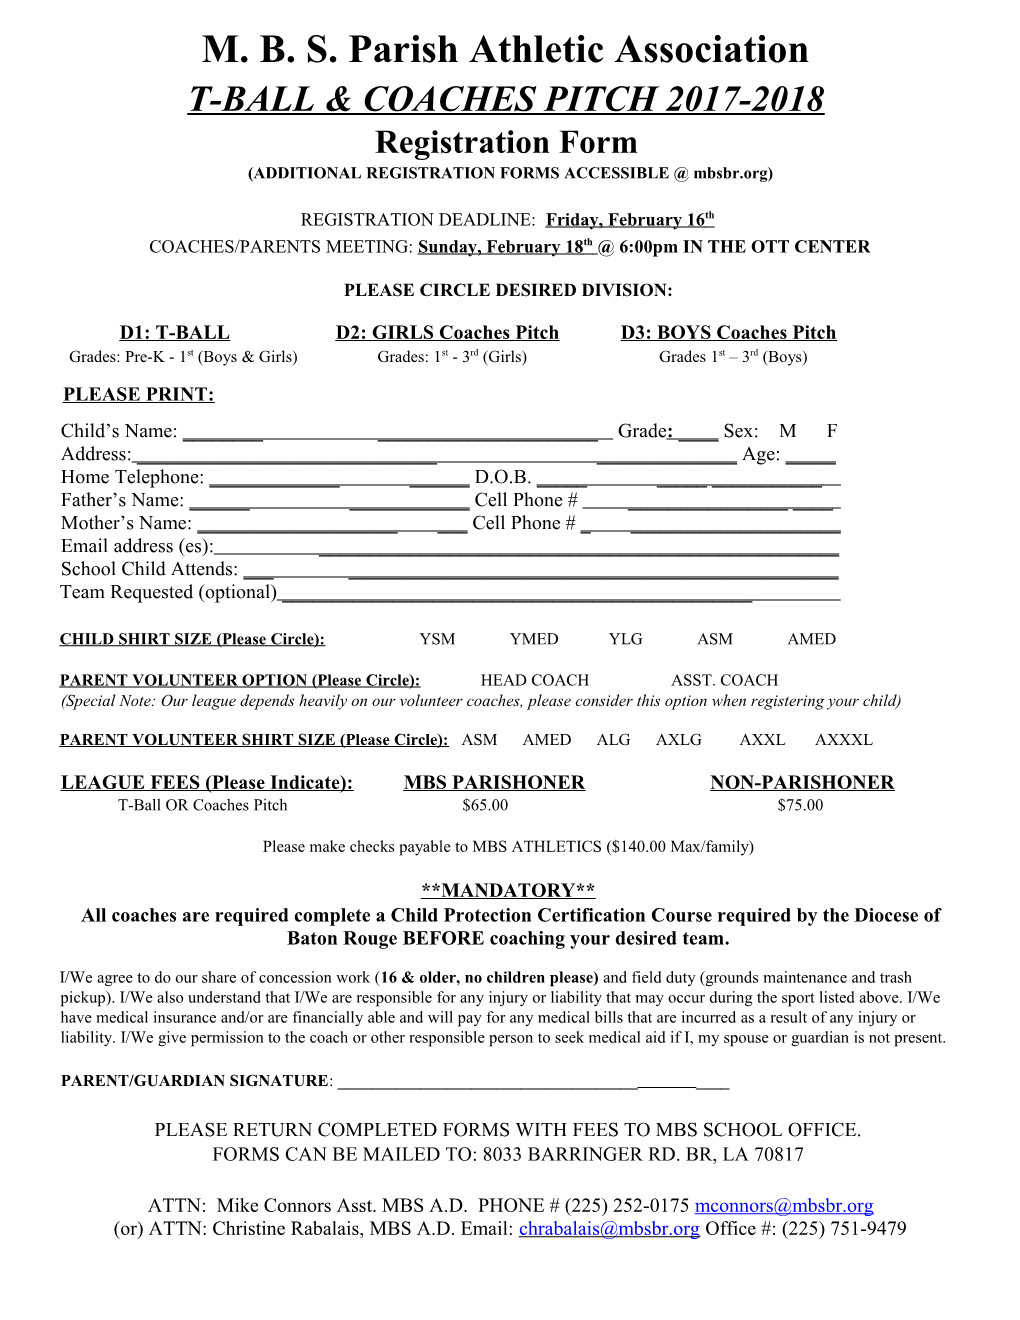 2017 Parish Baseball Registration Form